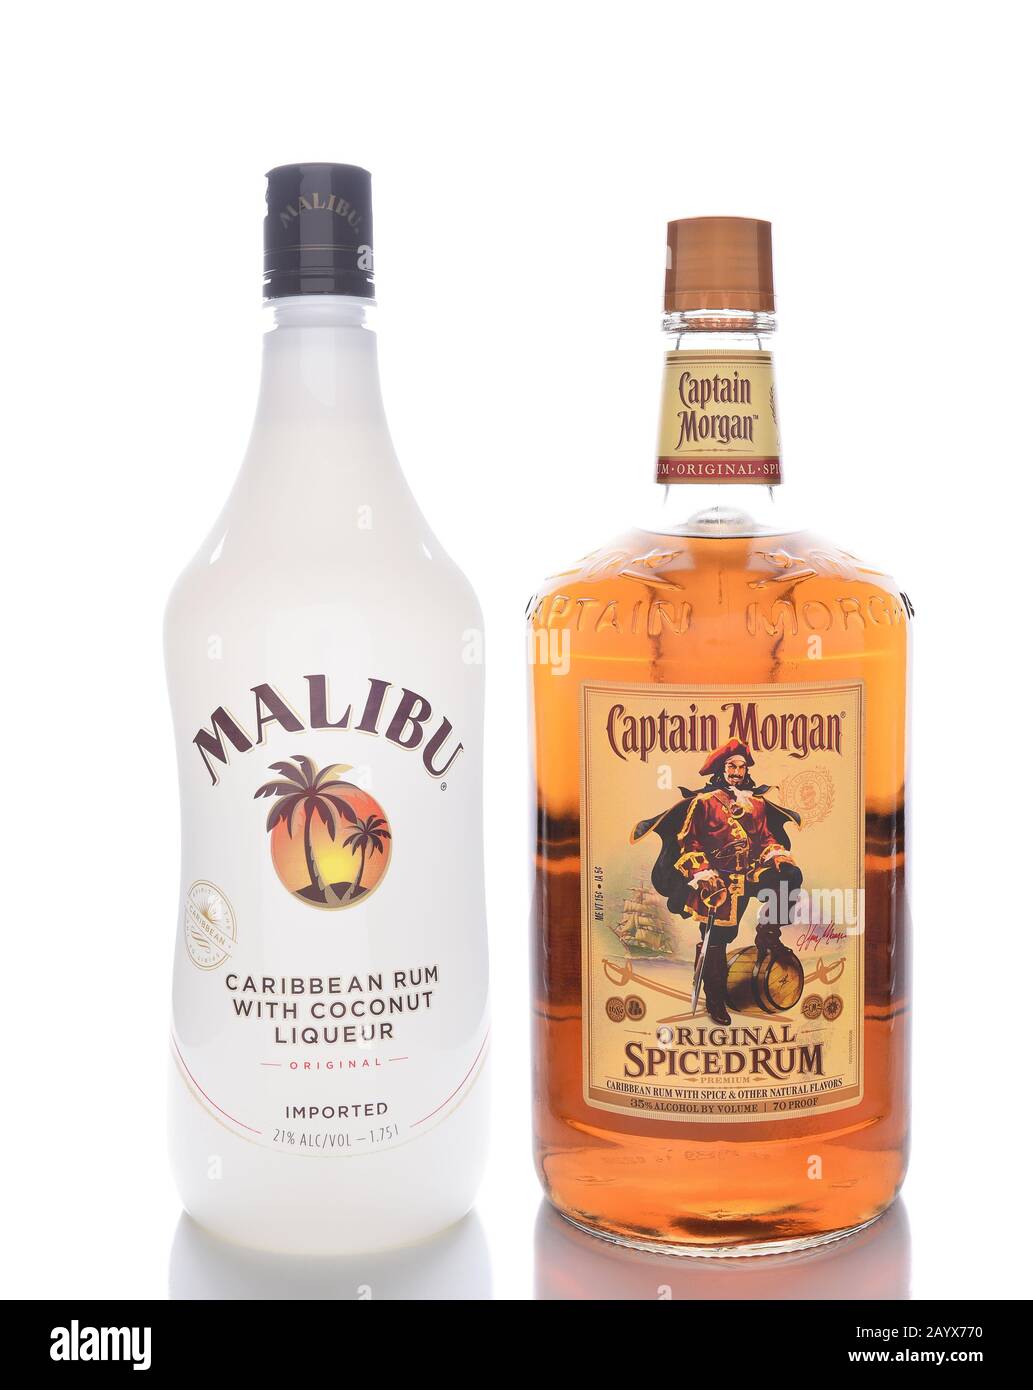 Irvine, CALIFORNIA - 13 GENNAIO 2017: Malibu e il capitano Morgan Spiced Rum. Due dei rum aromatizzati più popolari al mondo. Foto Stock